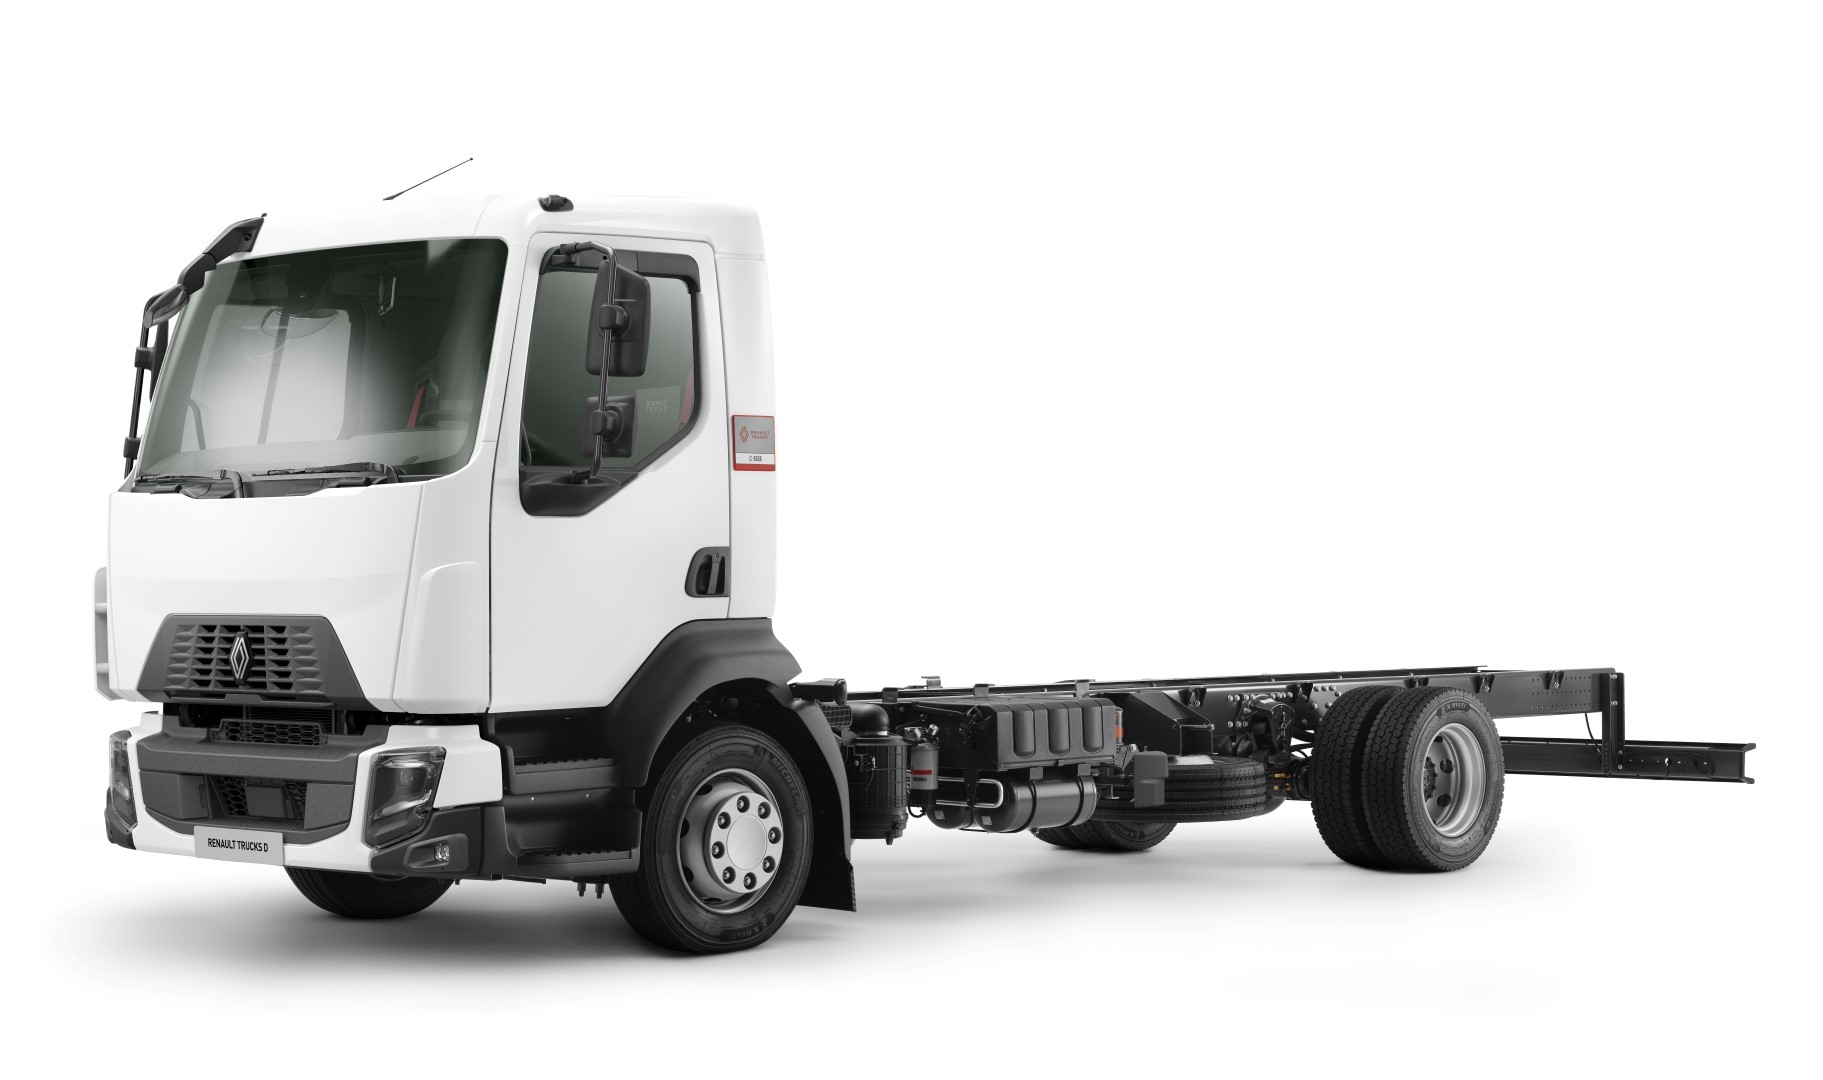 Renault Trucks şehir içi kamyon gamında yeni tasarım ve geliştirilmiş güvenlik